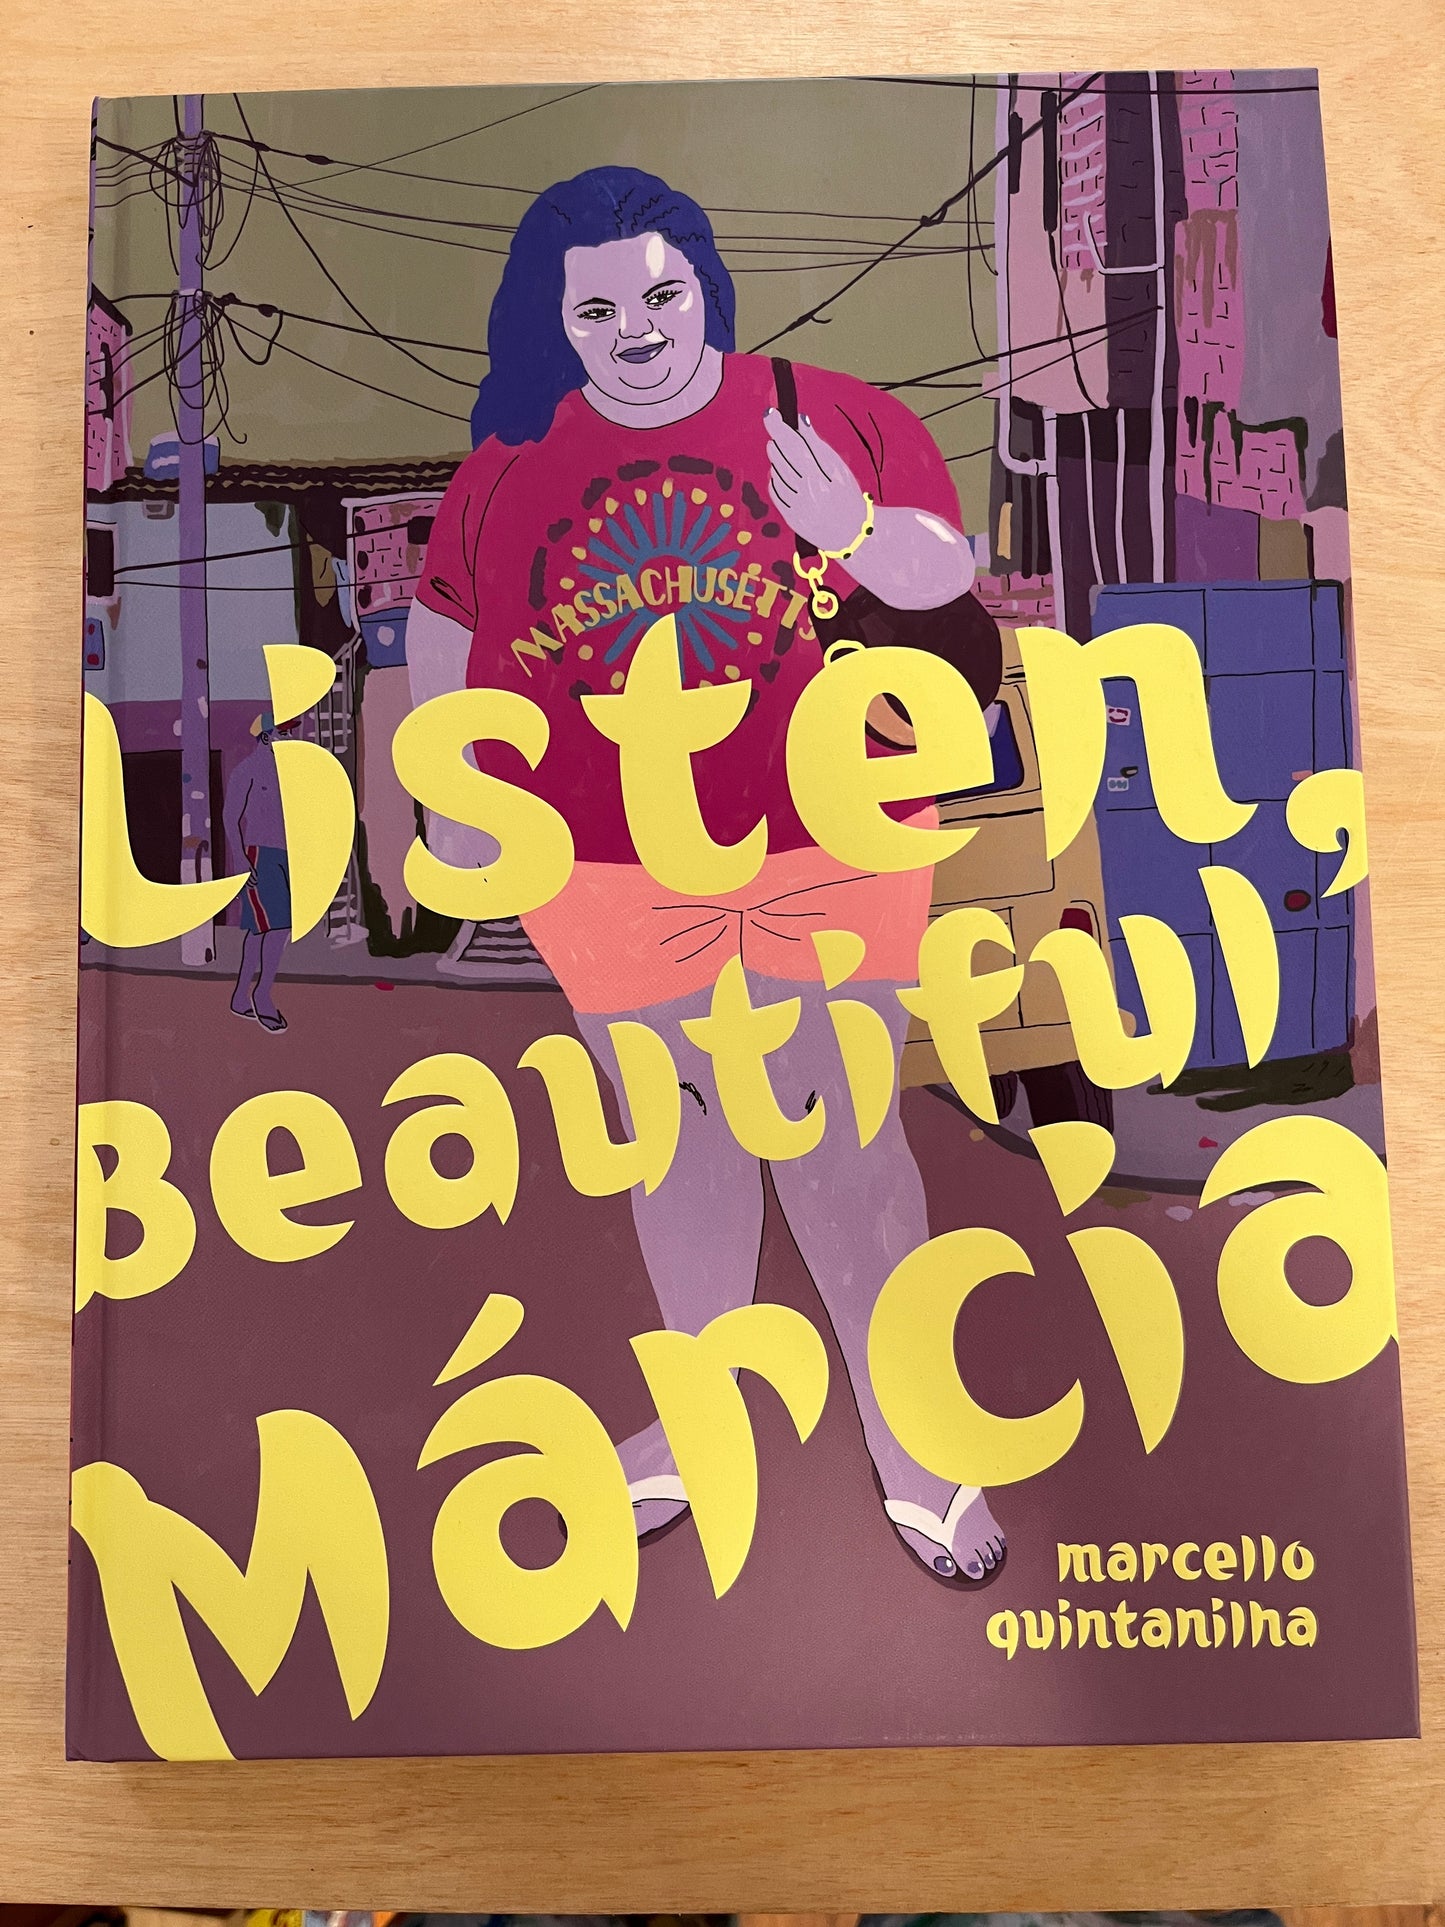 Listen, Beautiful Marcia